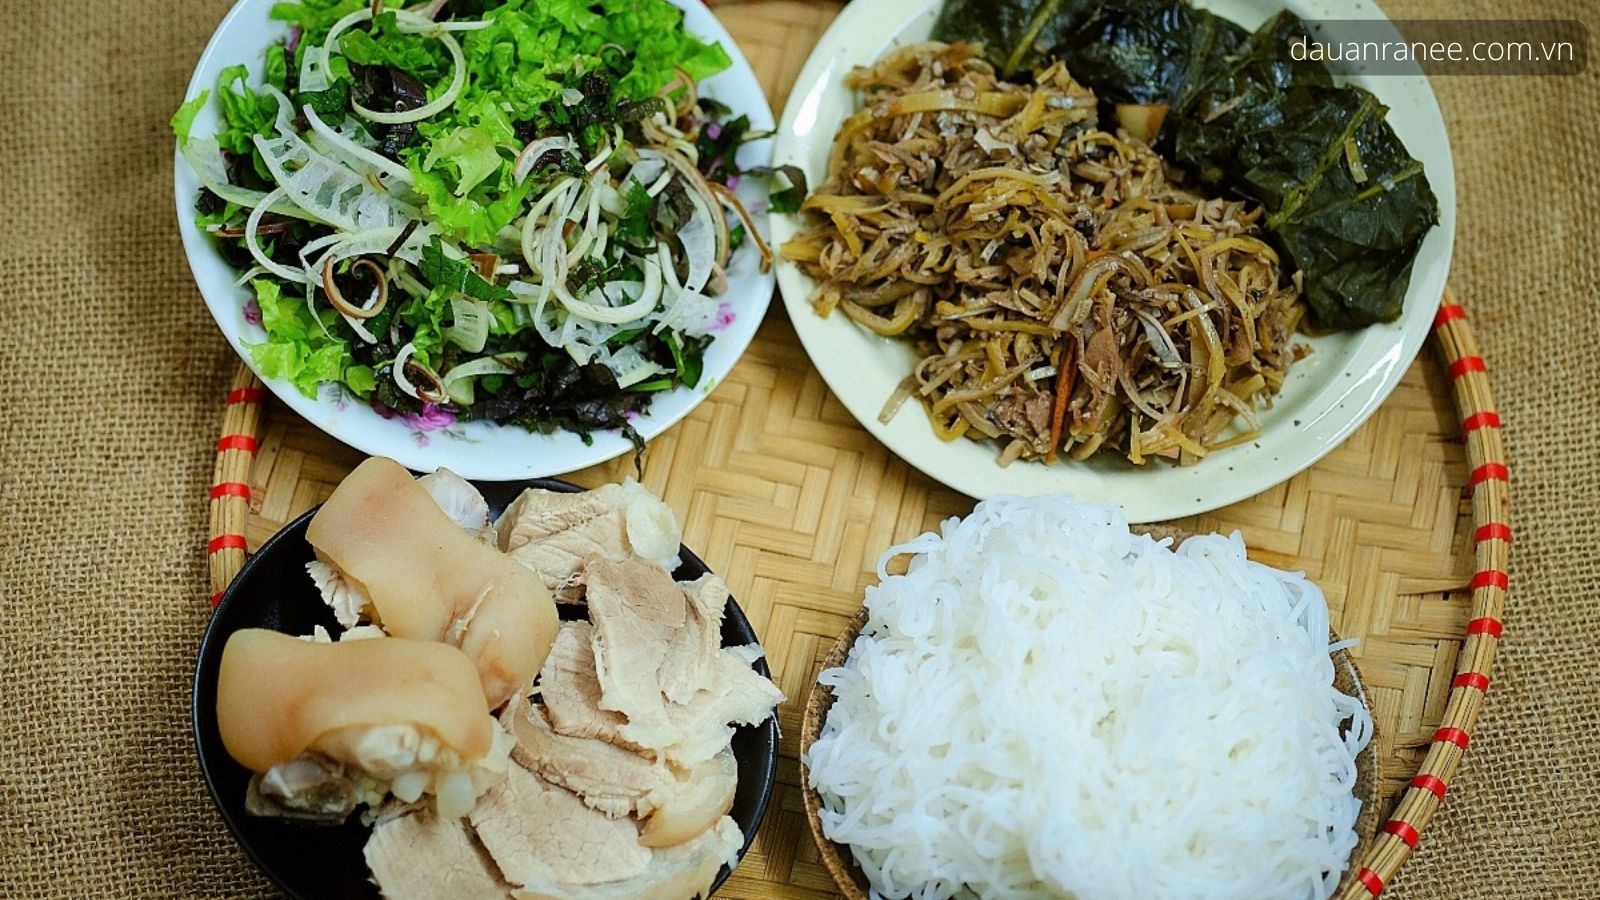 Bún bung ăn thay cơm bình dân - Đặc sản Thái Bình